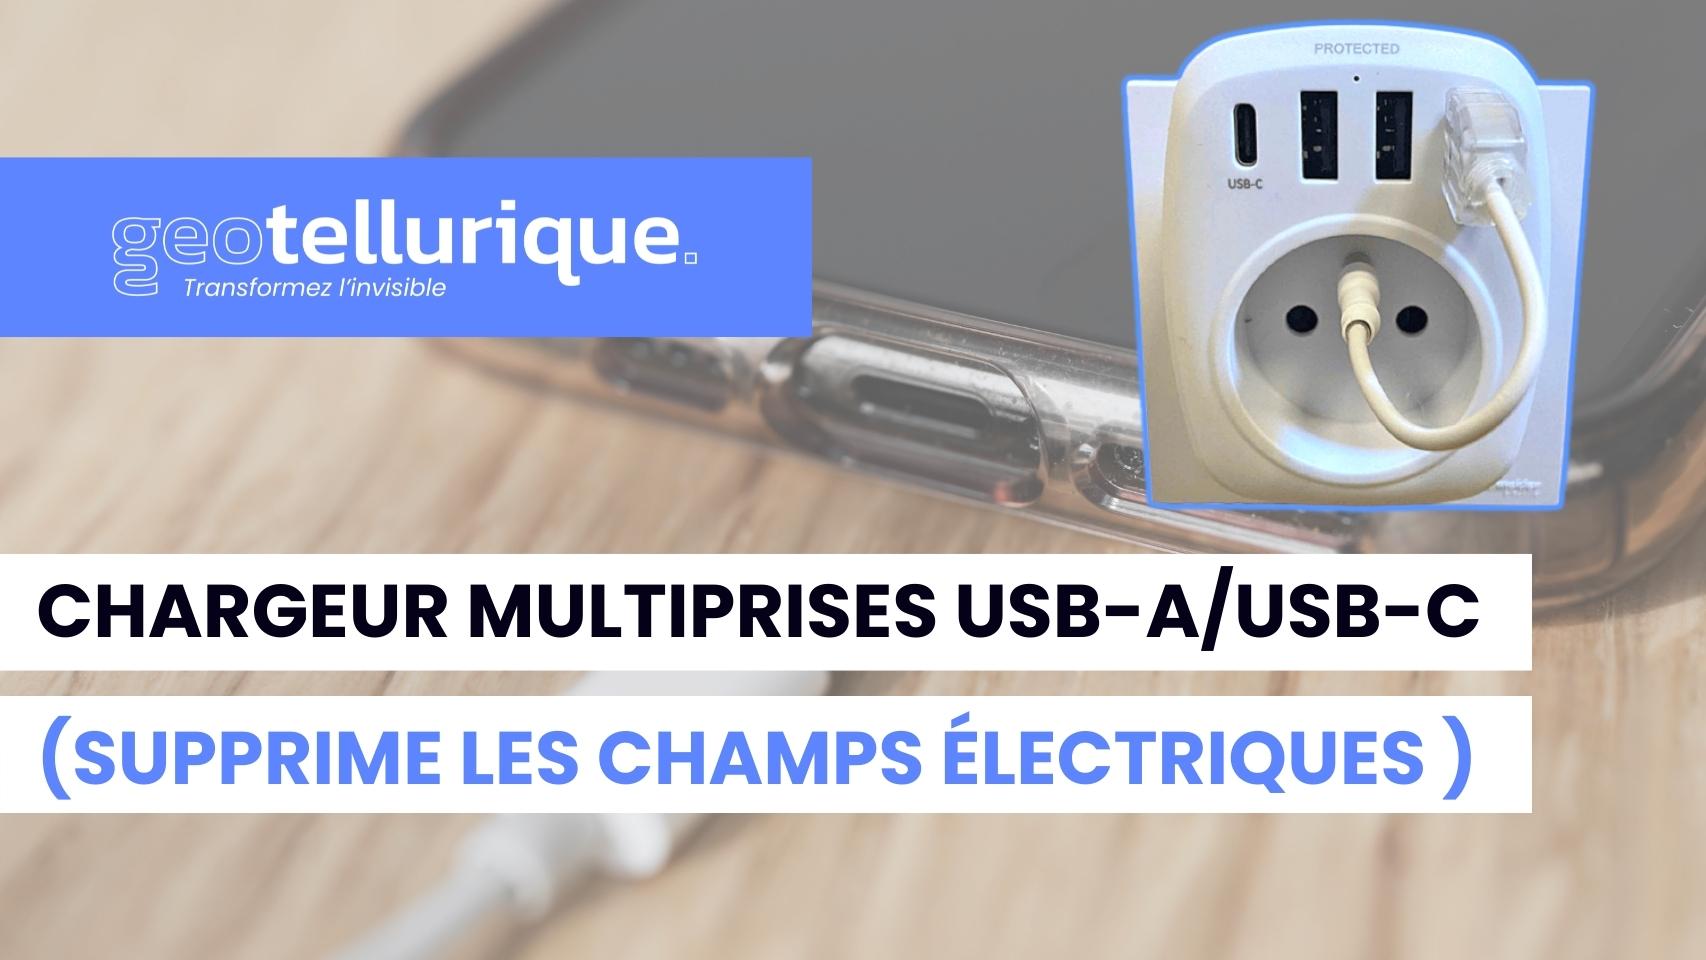 Vidéo de présentation chargeur multiprises USB-A/USB-C avec câble USB-A de mise à la terre, pour smartphone, réveil